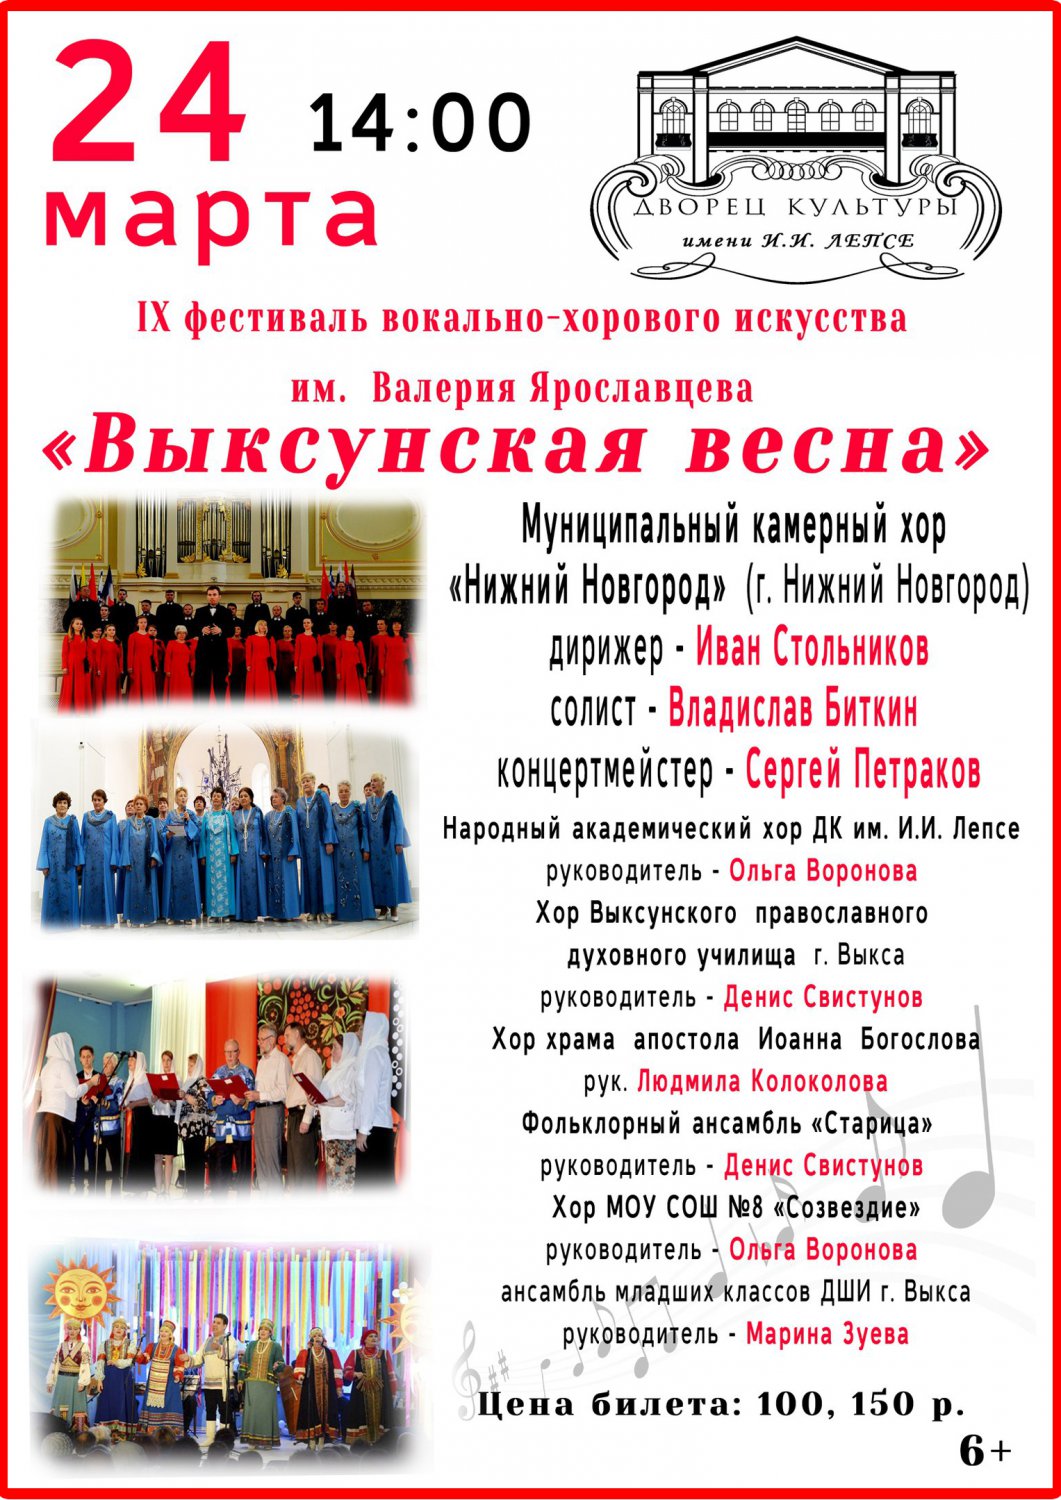 IX фестиваль вокально-хорового искусства «Выксунская весна»